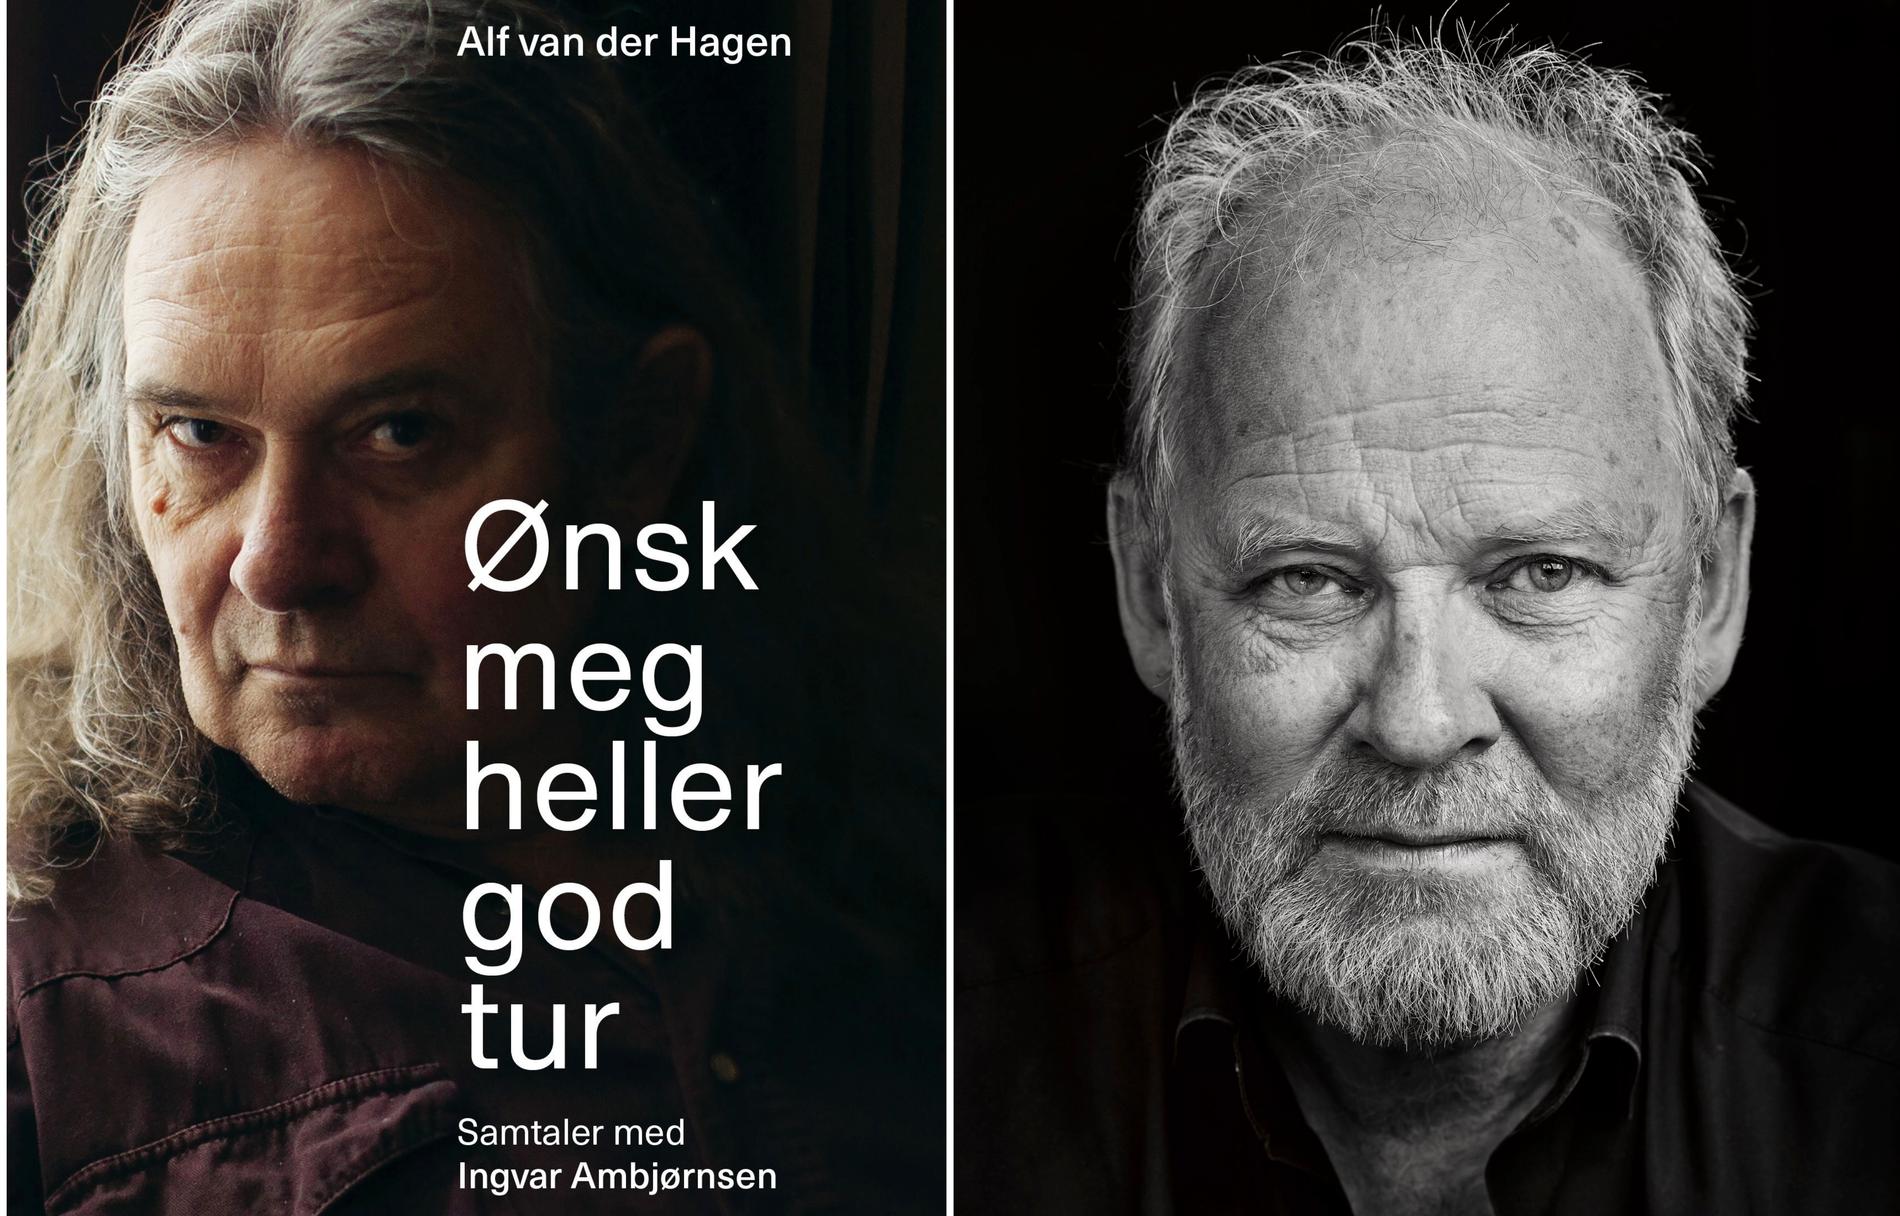 Informazioni sull'autore: Alf van der Hagen (nato nel 1962) ha pubblicato la prima autobiografia conversazionale intitolata 